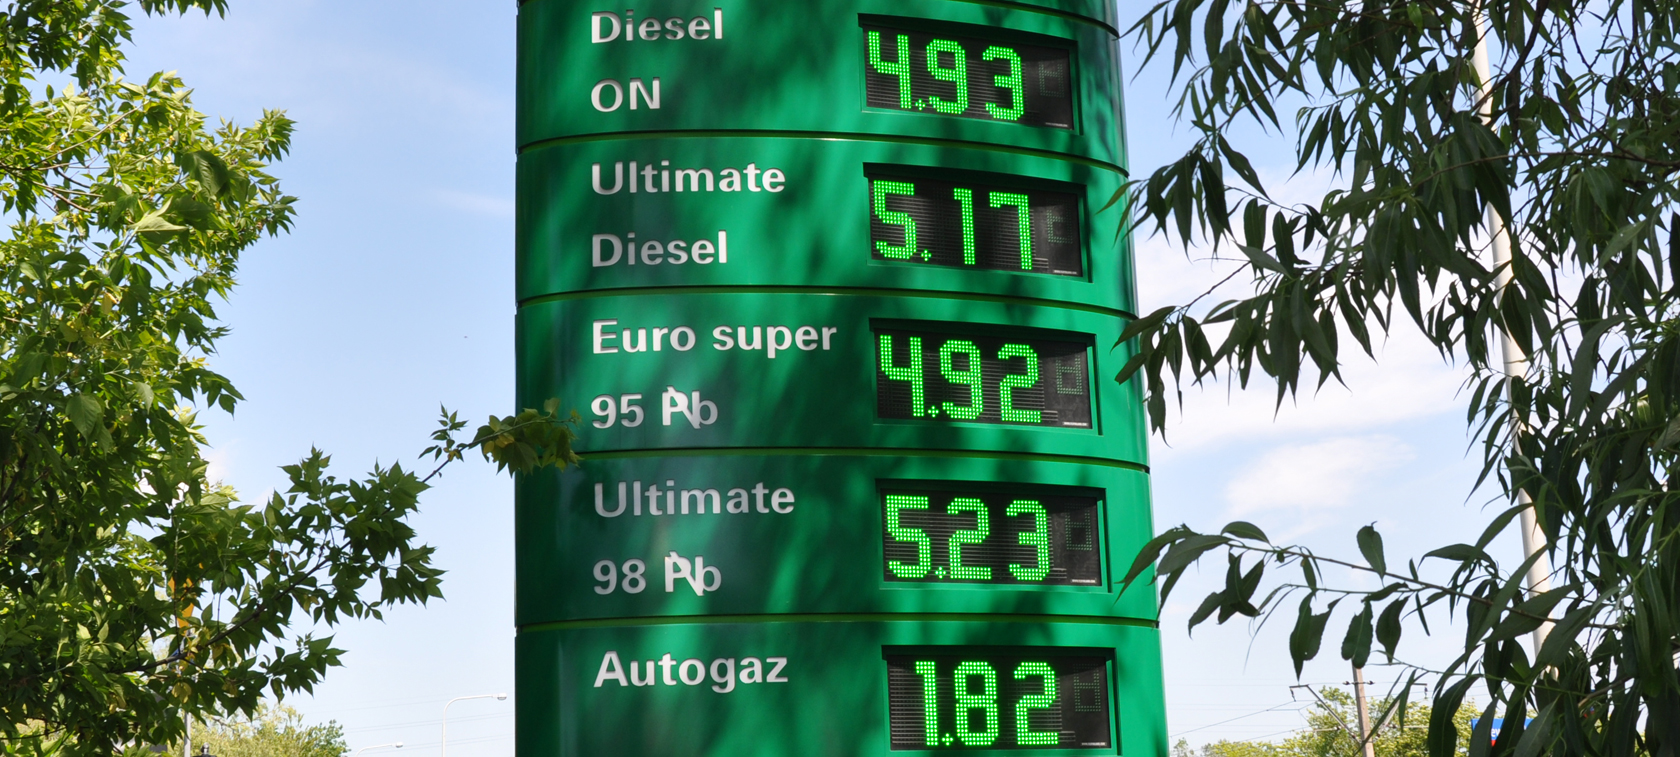 Ceny LPG - mniej znaczy więcej